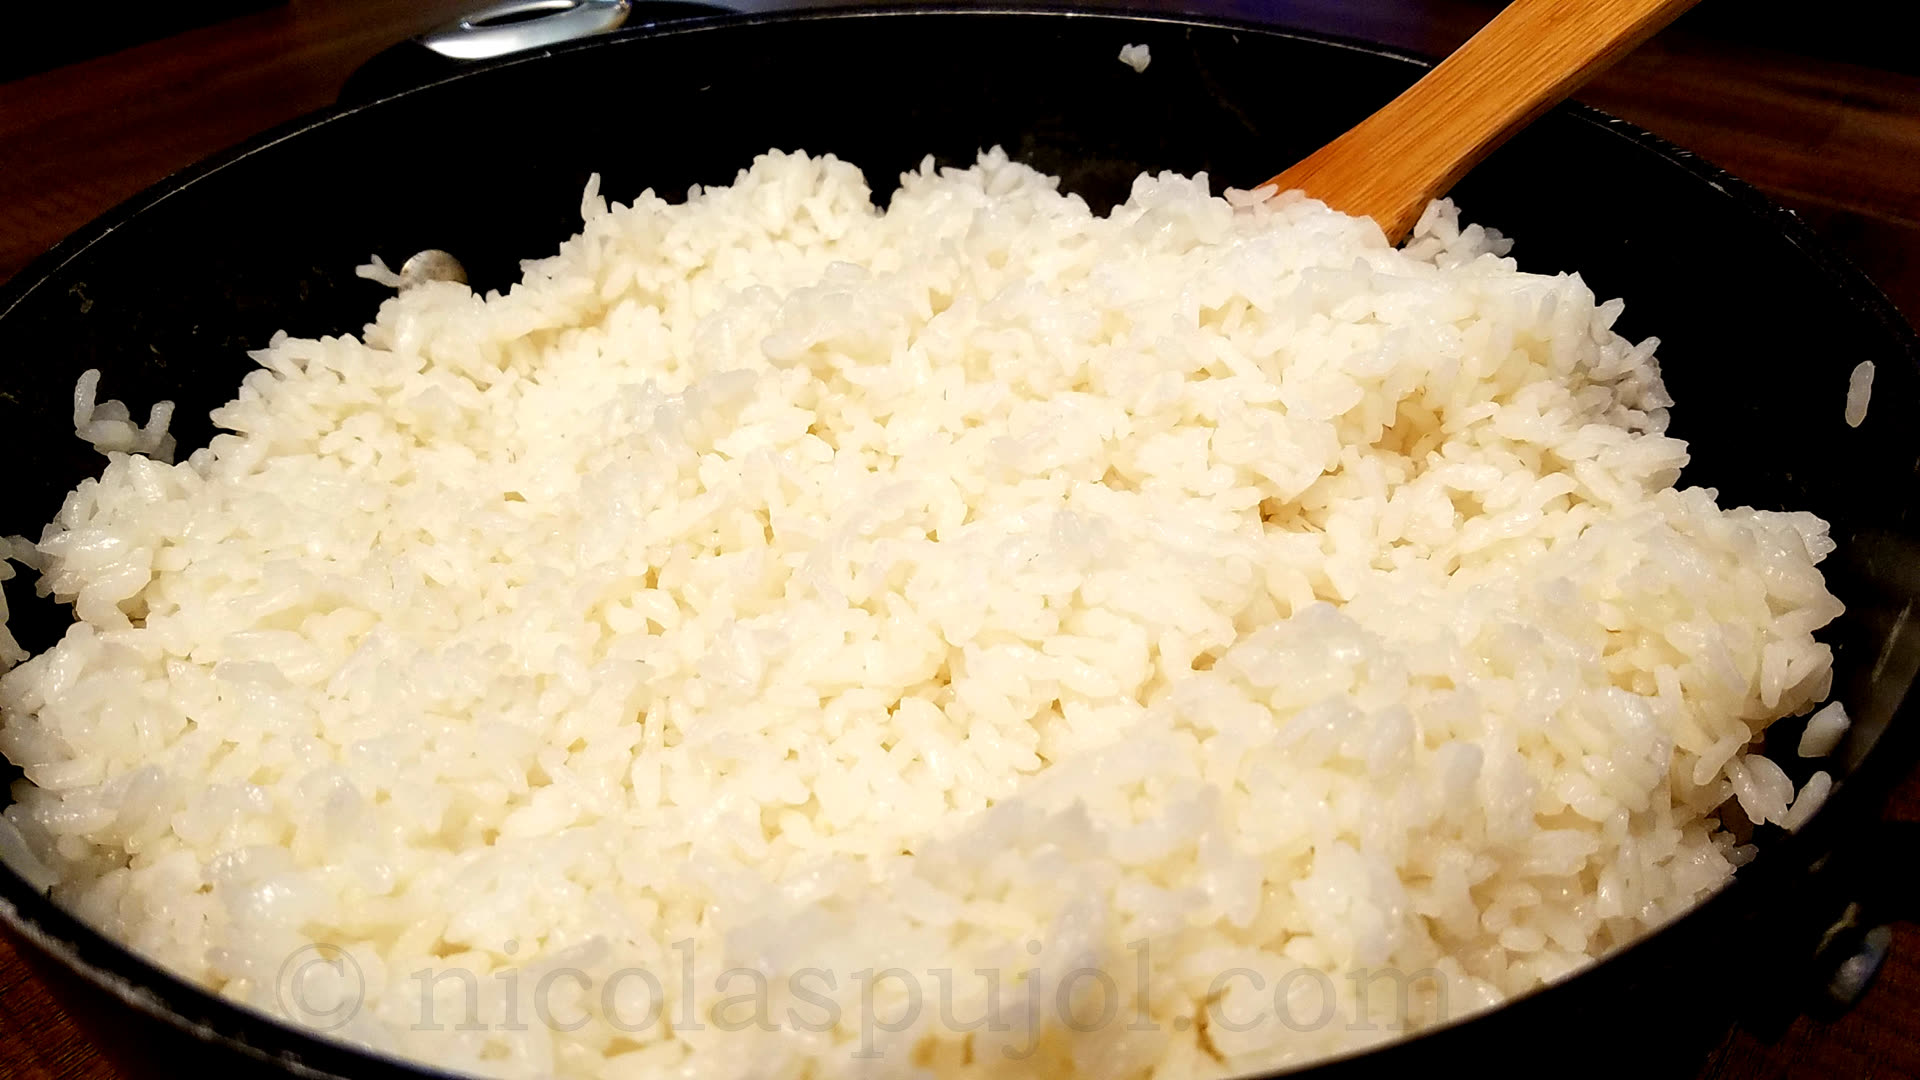 https://www.nicolaspujol.com/wp-content/uploads/2018/04/Sushi-rice-recipe.jpg